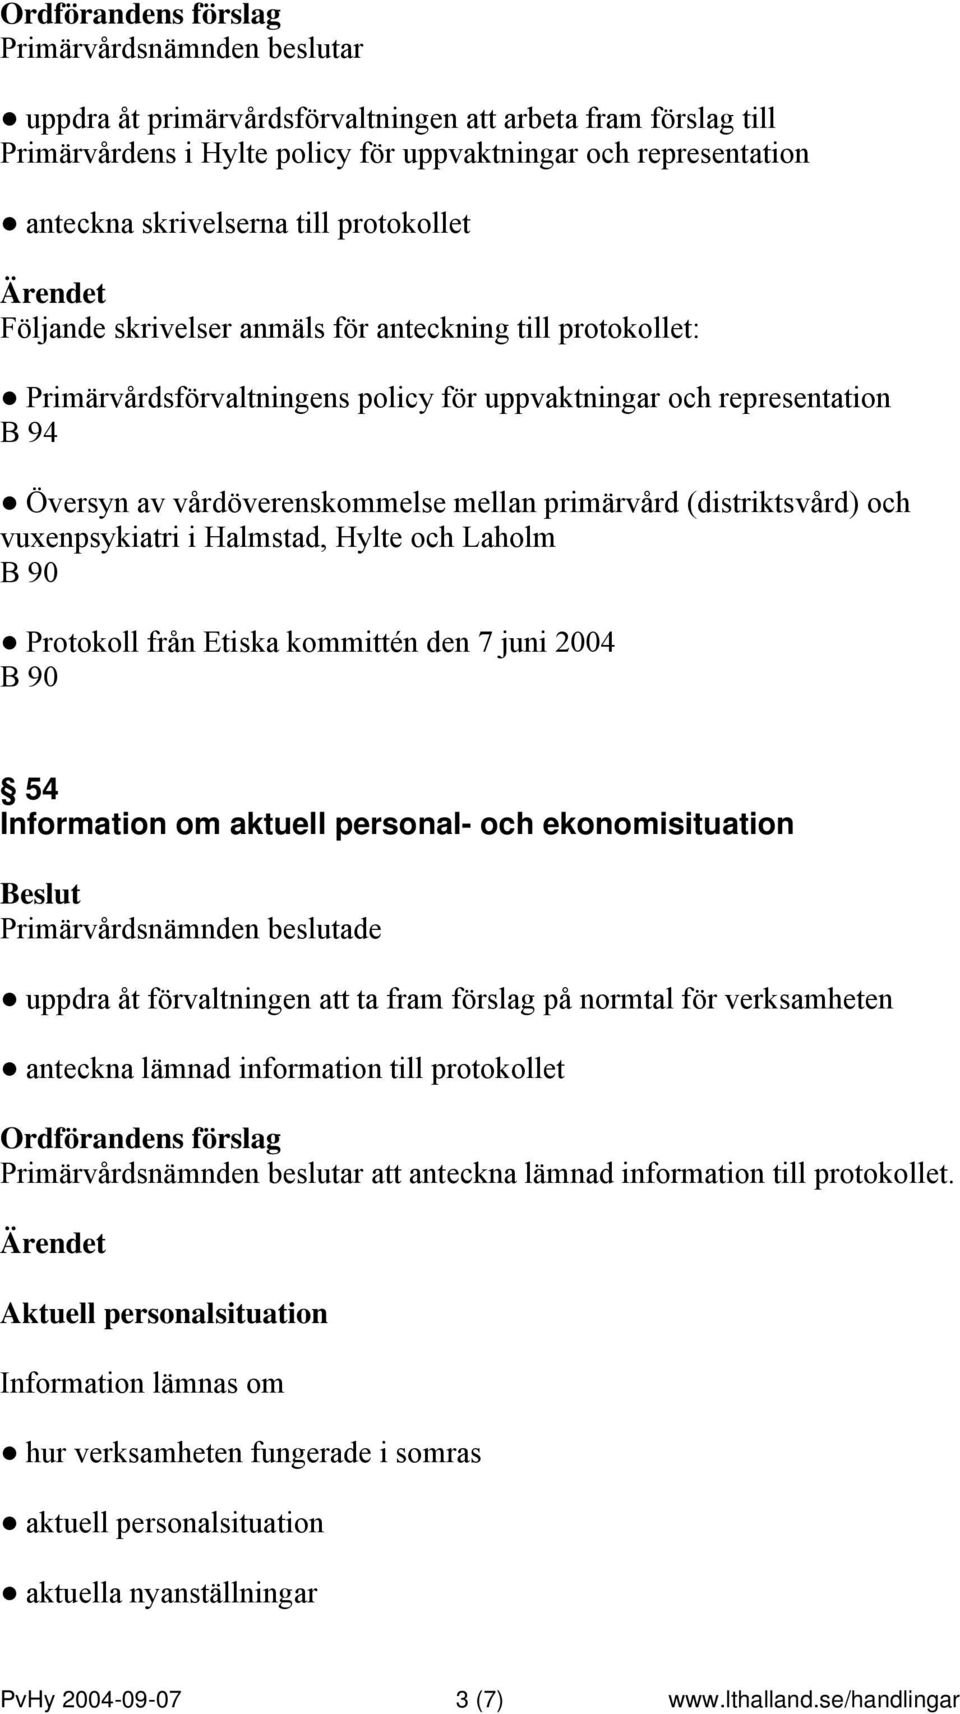 och vuxenpsykiatri i Halmstad, Hylte och Laholm B 90 Protokoll från Etiska kommittén den 7 juni 2004 B 90 54 Information om aktuell personal- och ekonomisituation uppdra åt förvaltningen att ta fram